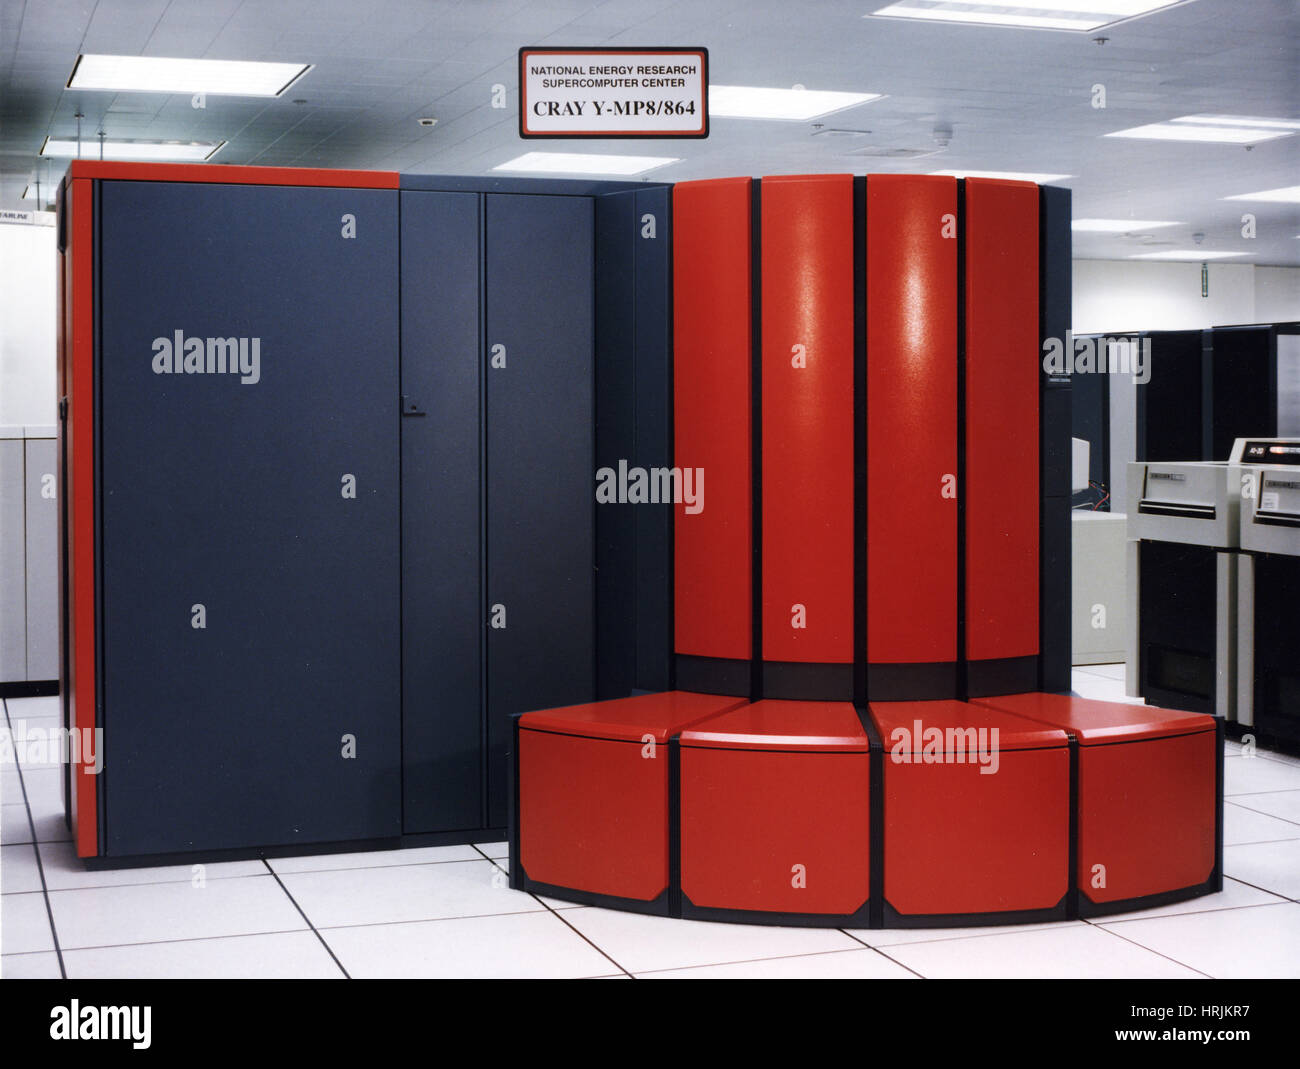 Cray Y-MP8/864 superordinateur, LLNL, années 90 Banque D'Images